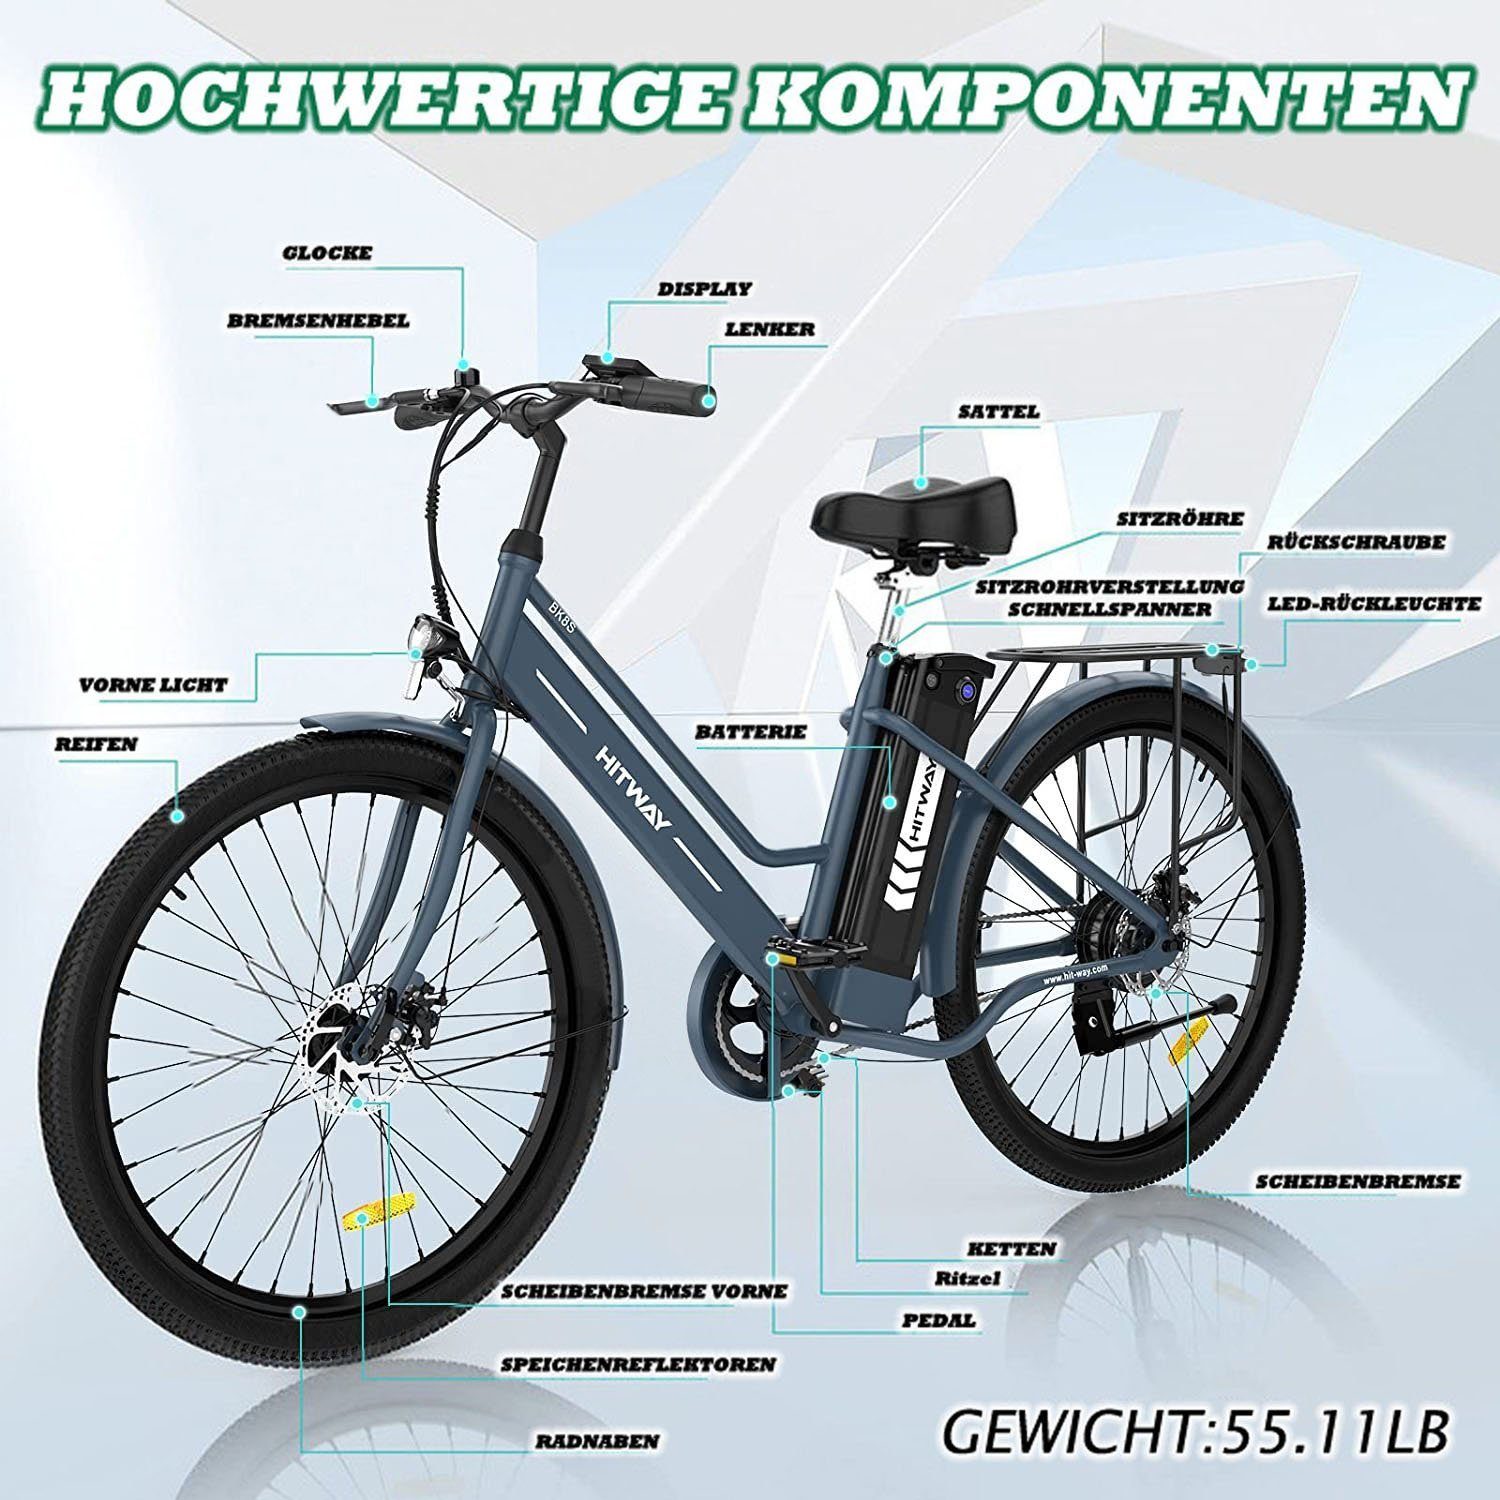 HITWAY E-Bike, SPedelec Elektro Trekkingrad 26" cityrad max 70km